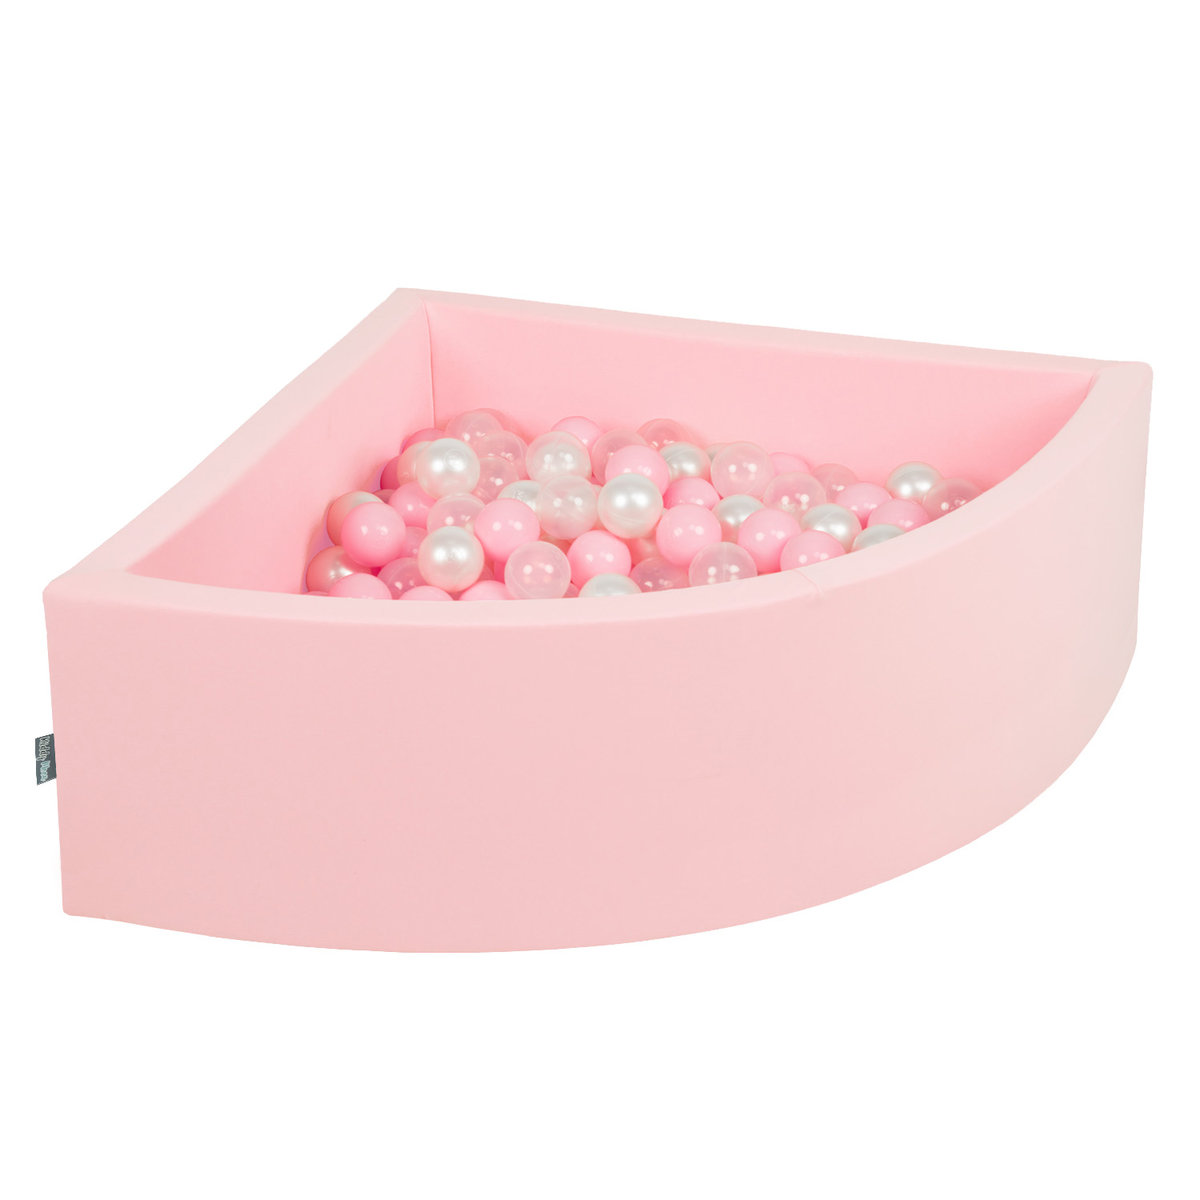 Zdjęcia - Pozostałe zabawki KiddyMoon Suchy basen trójkątny z piłeczkami 7cm różowy: pudrowy róż-perła